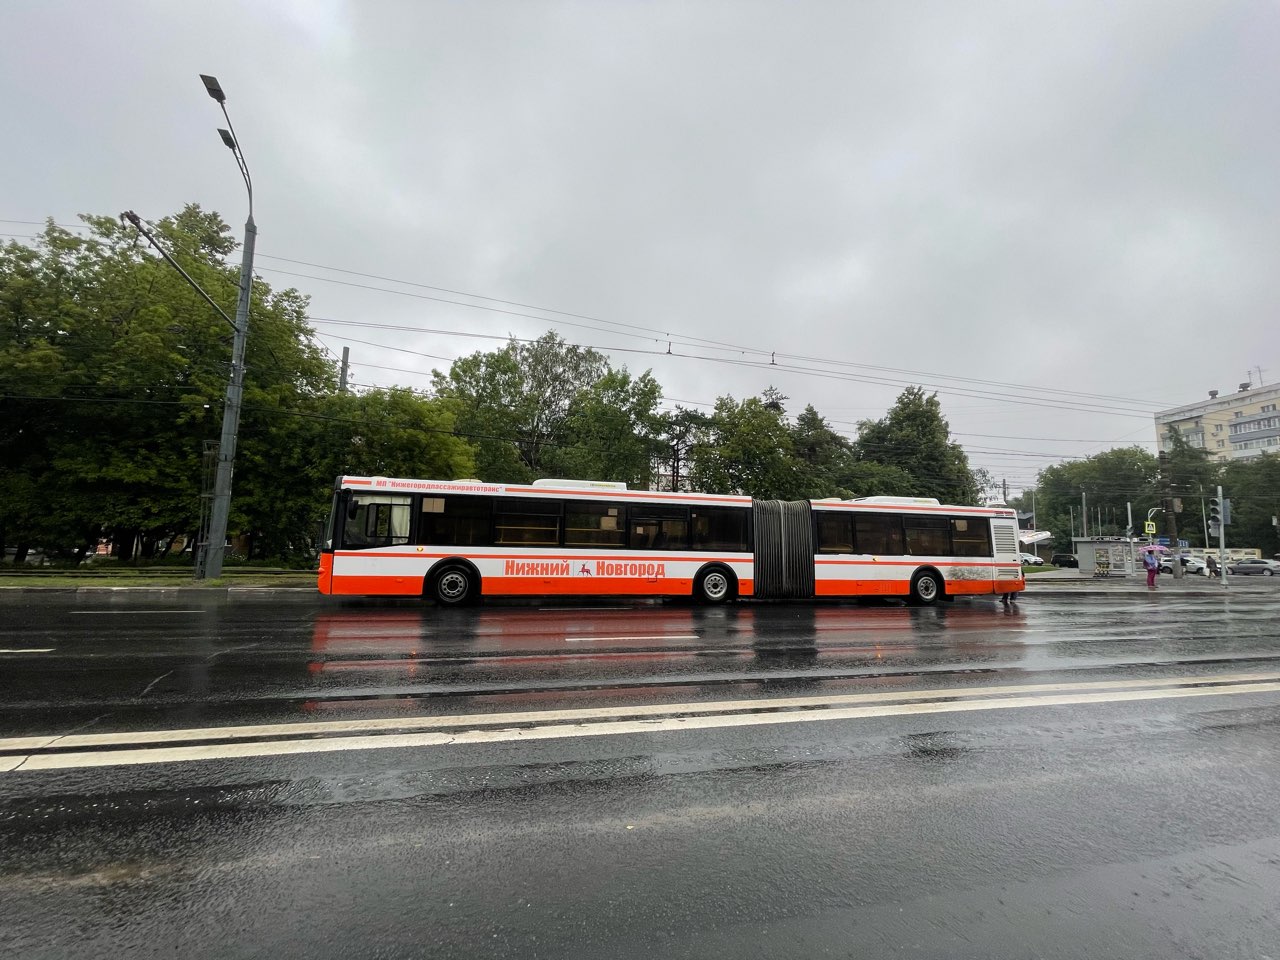 Шесть автобусных маршрутов не отображаются на «умных остановках» Нижнего Новгорода - фото 1